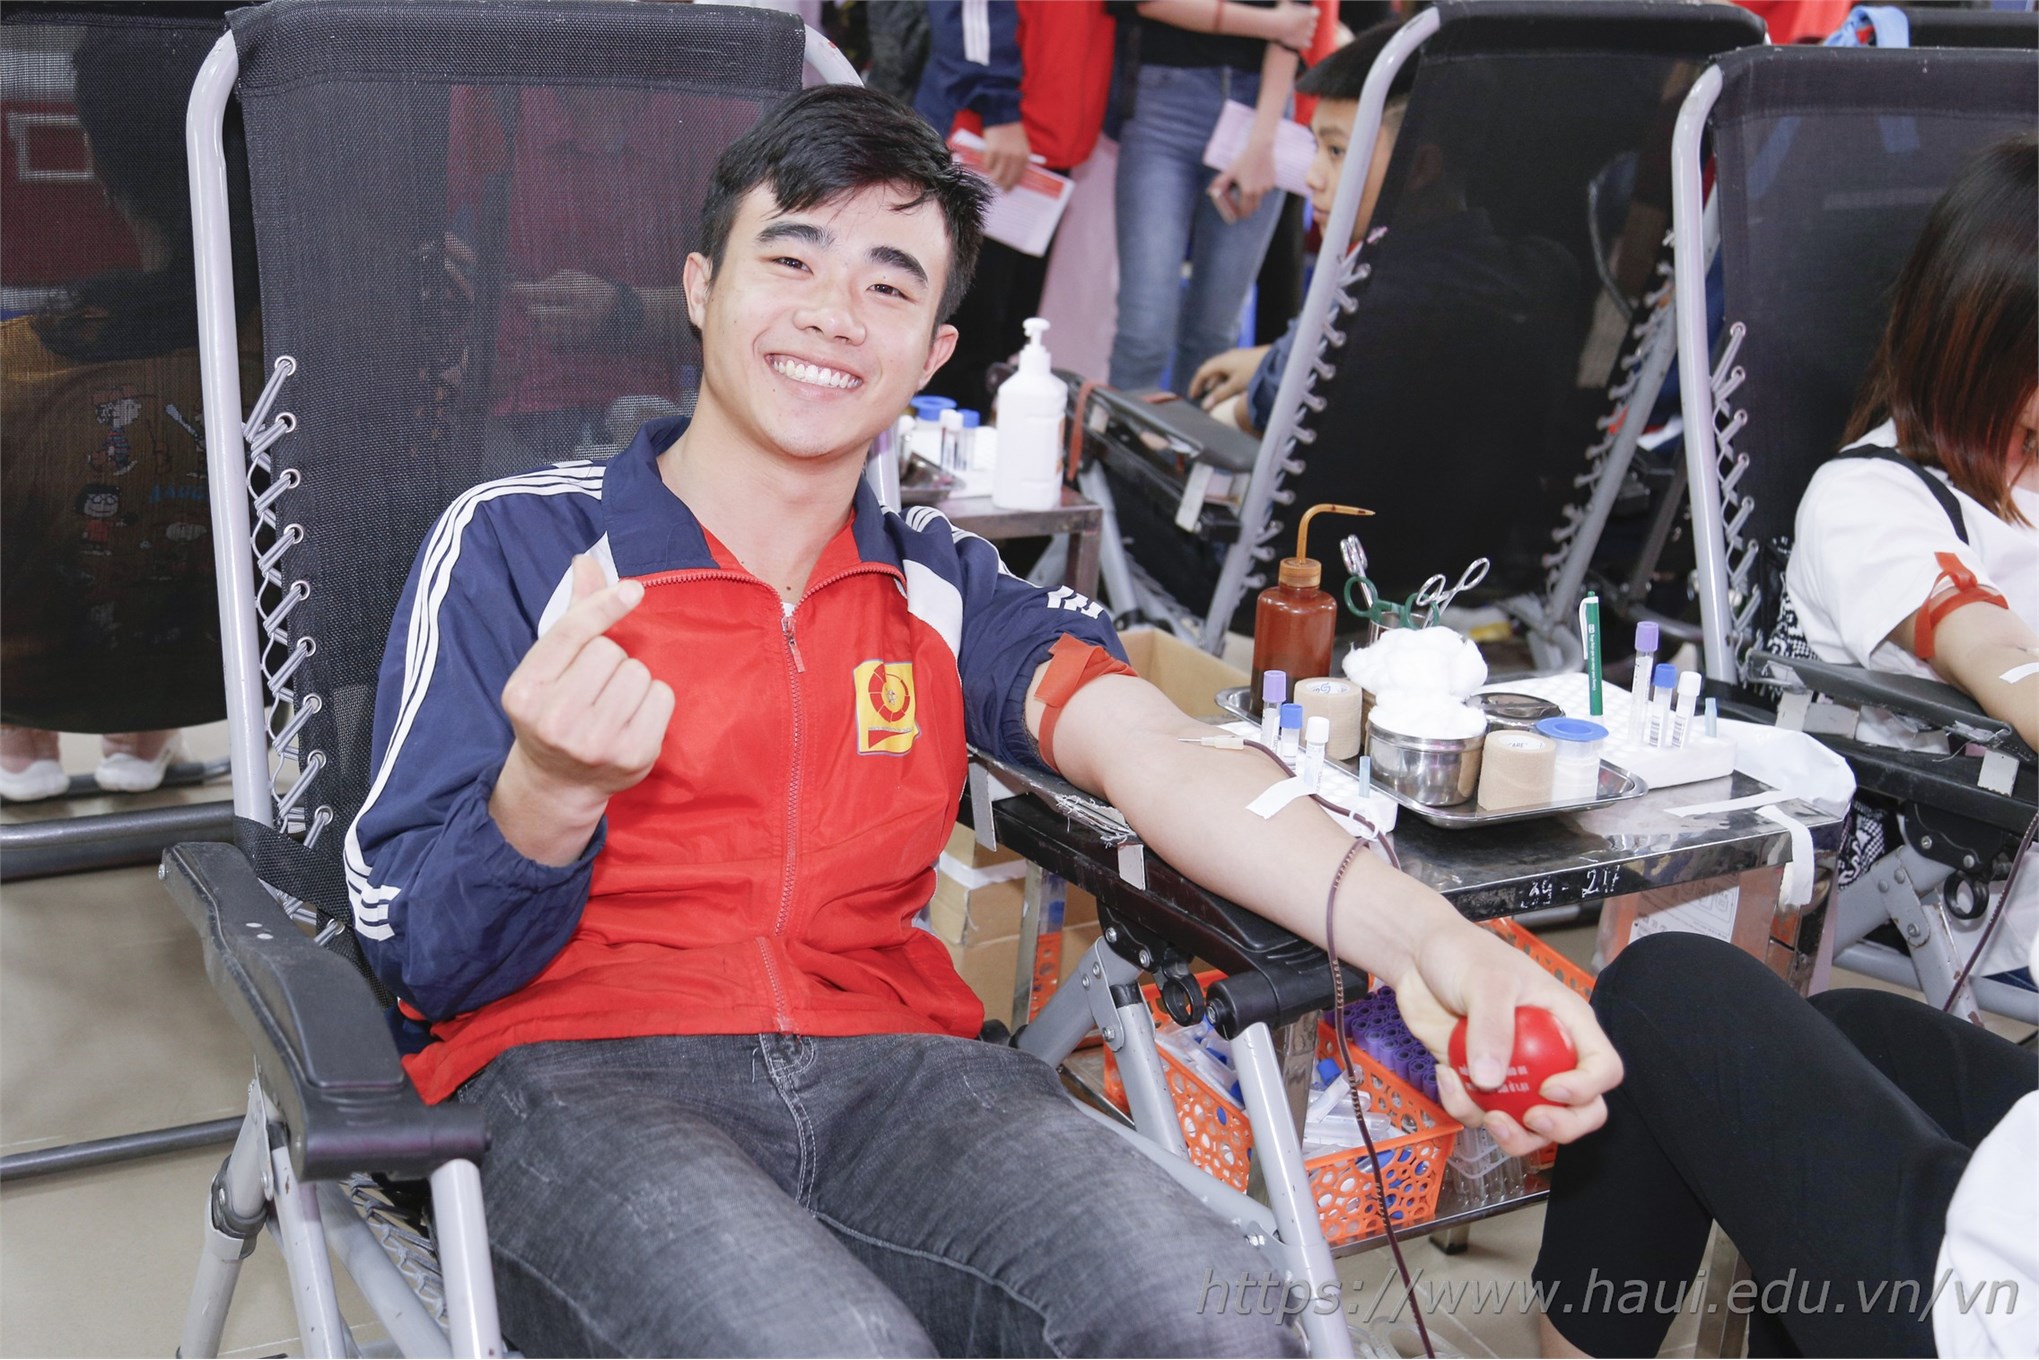 Cán bộ, giảng viên và sinh viênTrường Đại học Công nghiệp Hà Nội hiến tặng gần 2000 đơn vị máu tại Ngày hội Xuân hồng năm 2019